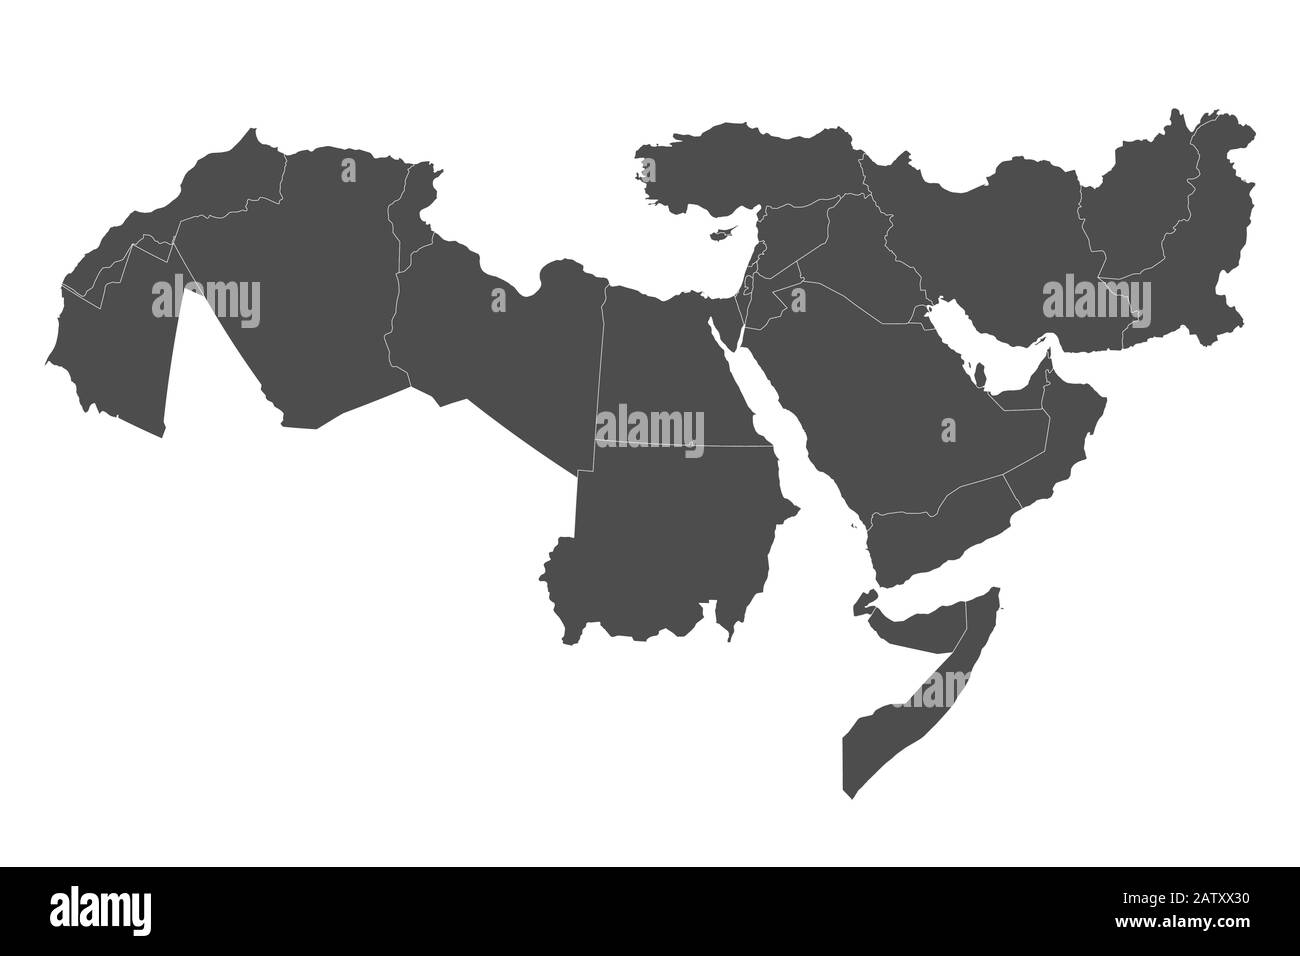 Mappa Del Grande Medio Oriente con confini di paesi Illustrazione Vettoriale